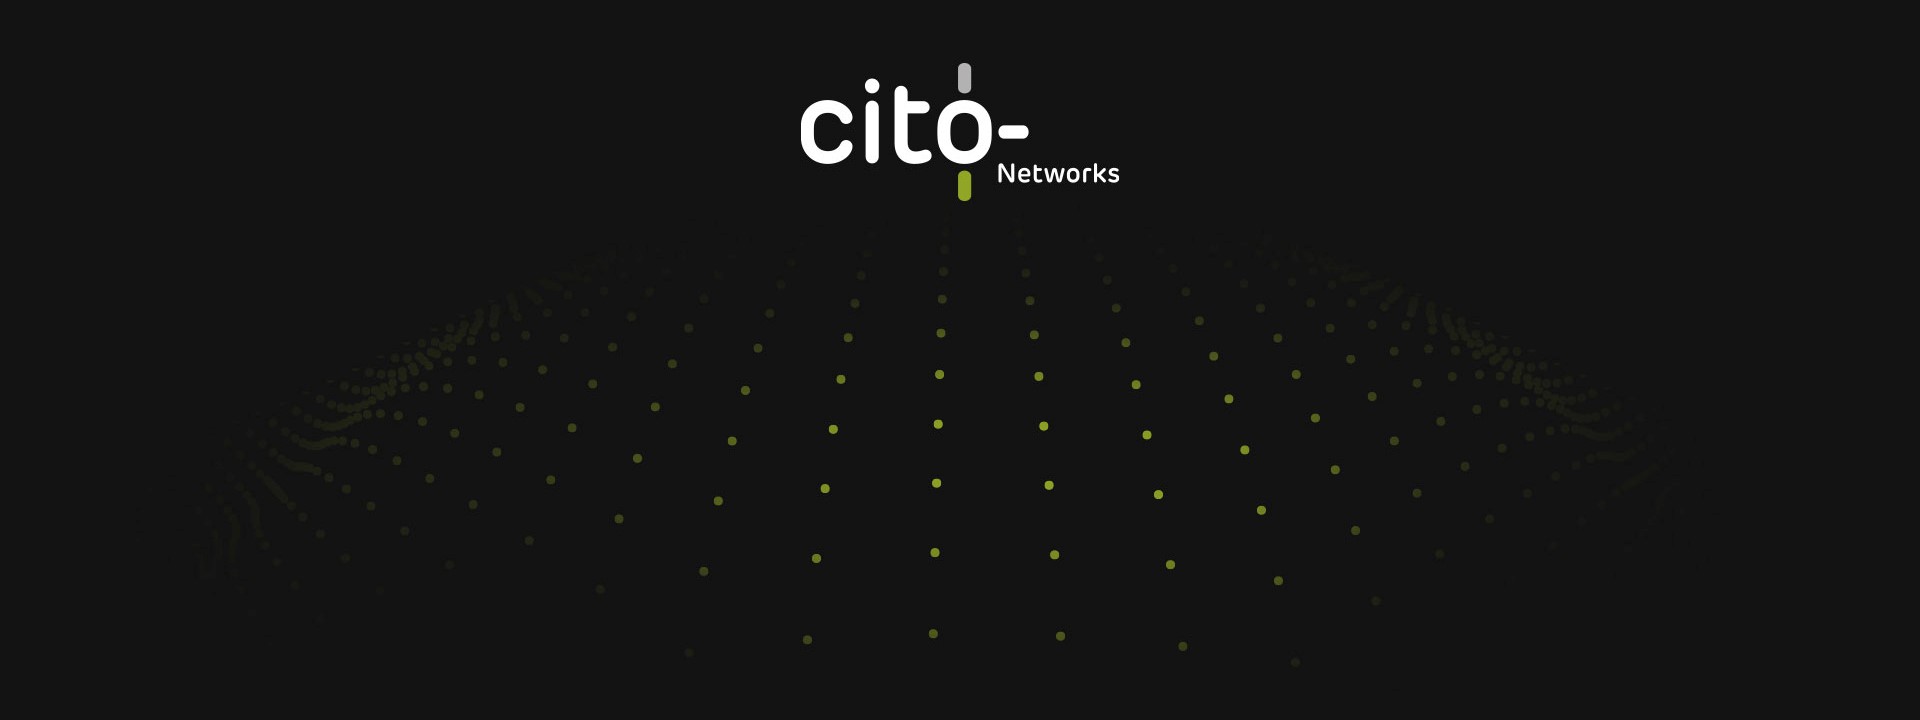 Cito Networks